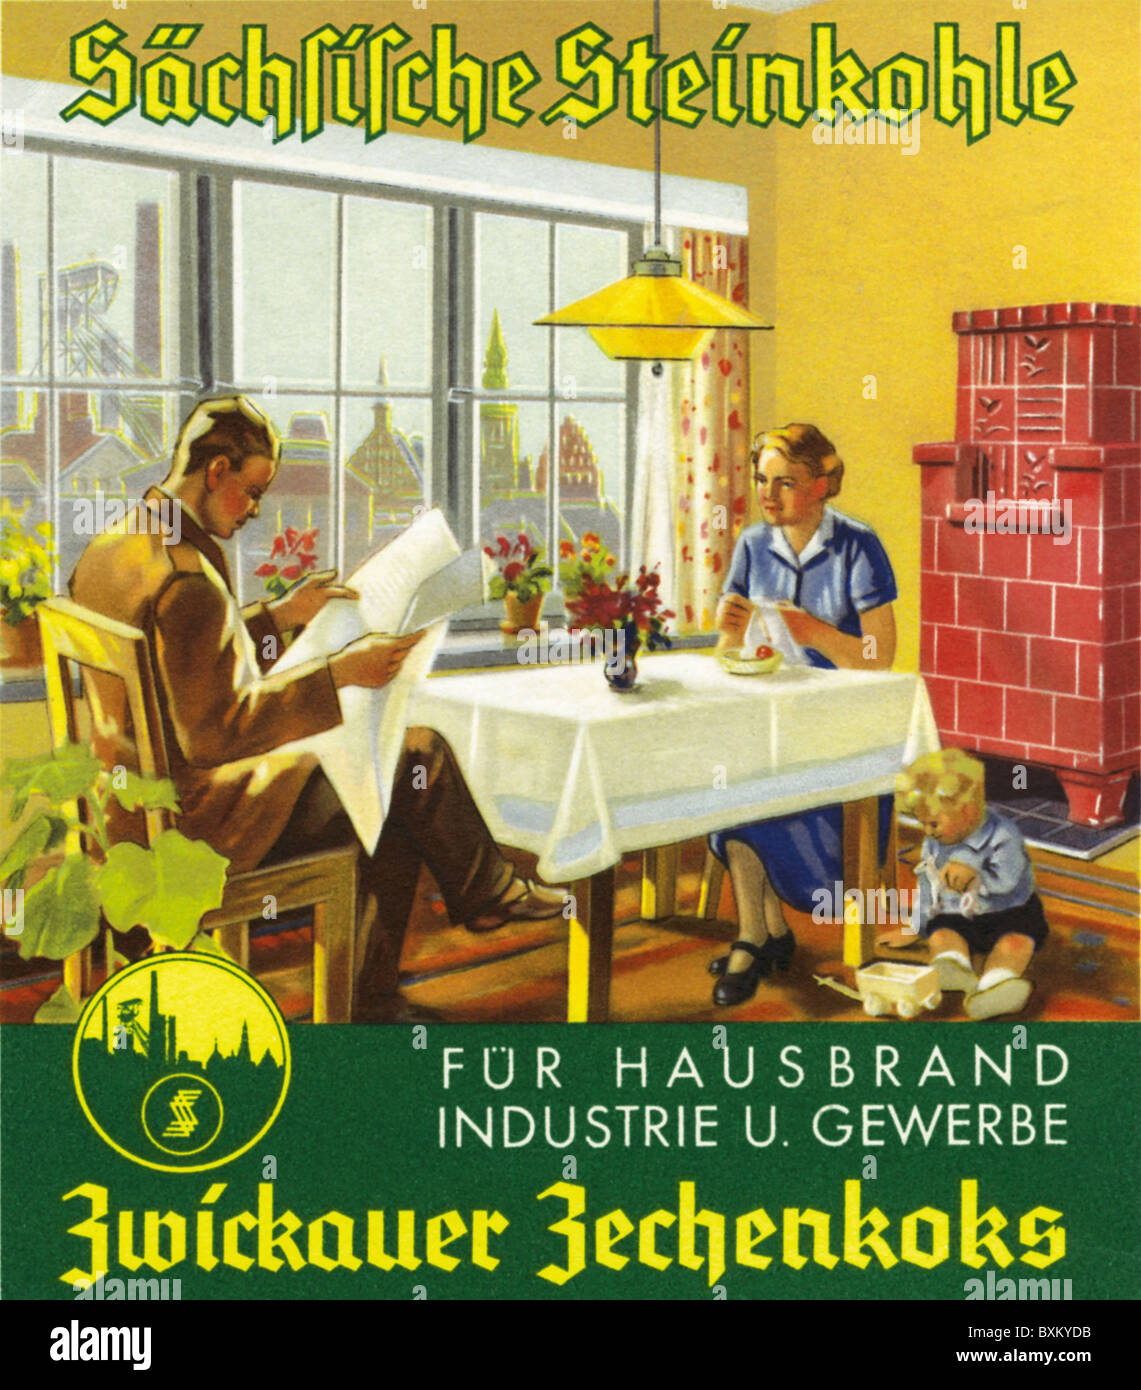 Werbung, Kohleunternehmen, Zwickau Zechenkoks, Familie mit Kachelofen, Deutschland, 1938, Zusatz-Rechte-Clearenzen-nicht vorhanden Stockfoto